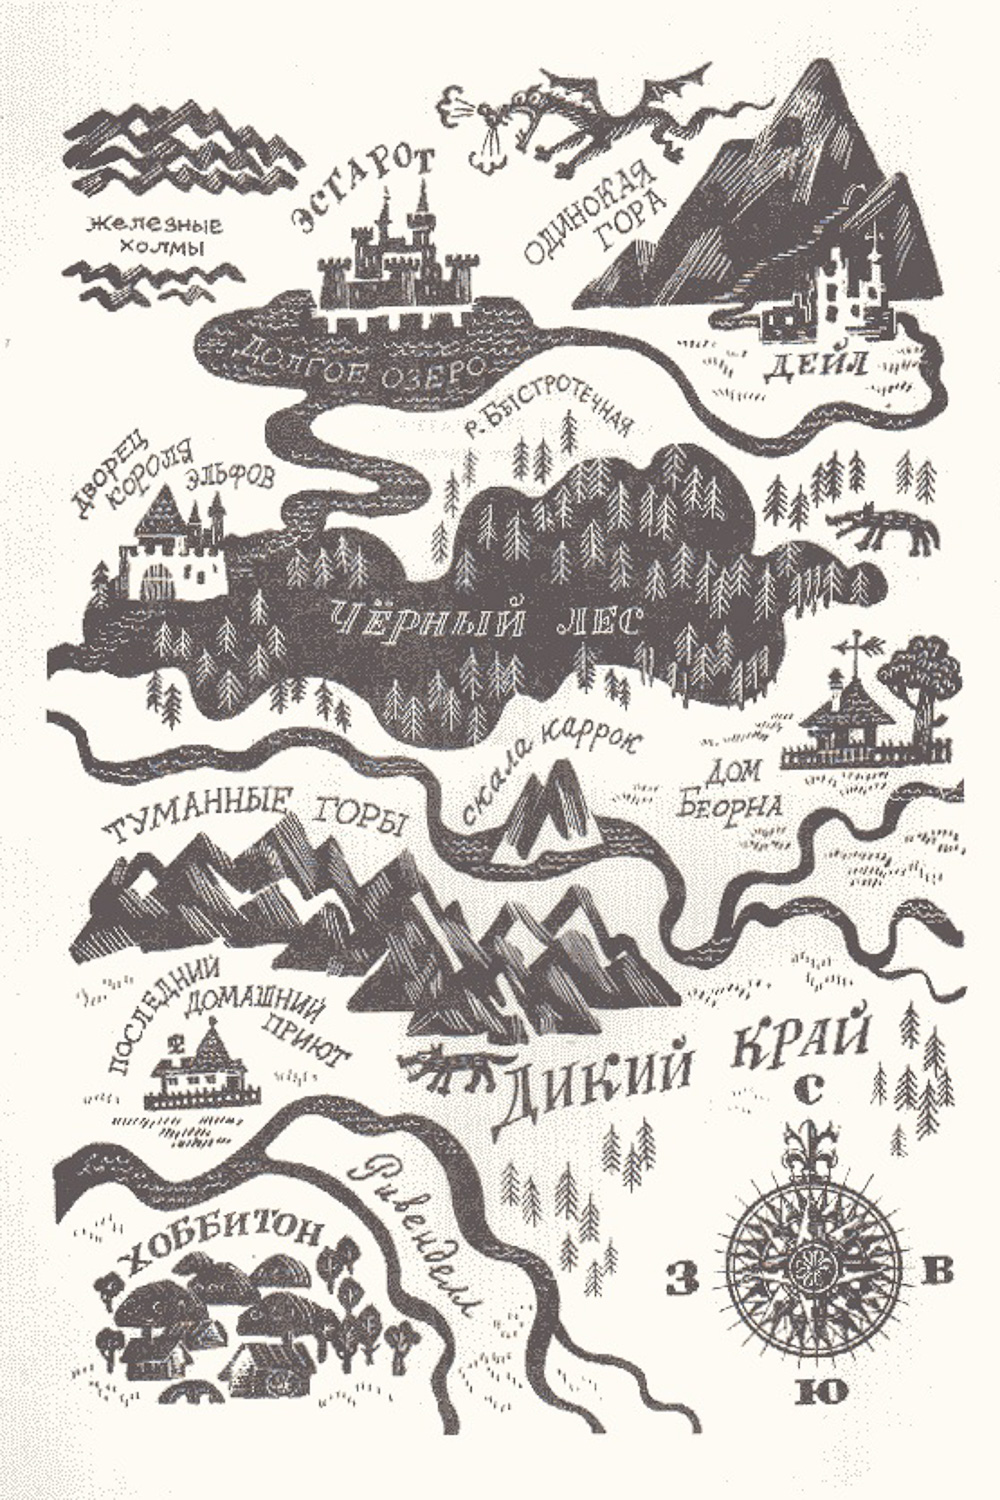 Hobbit map